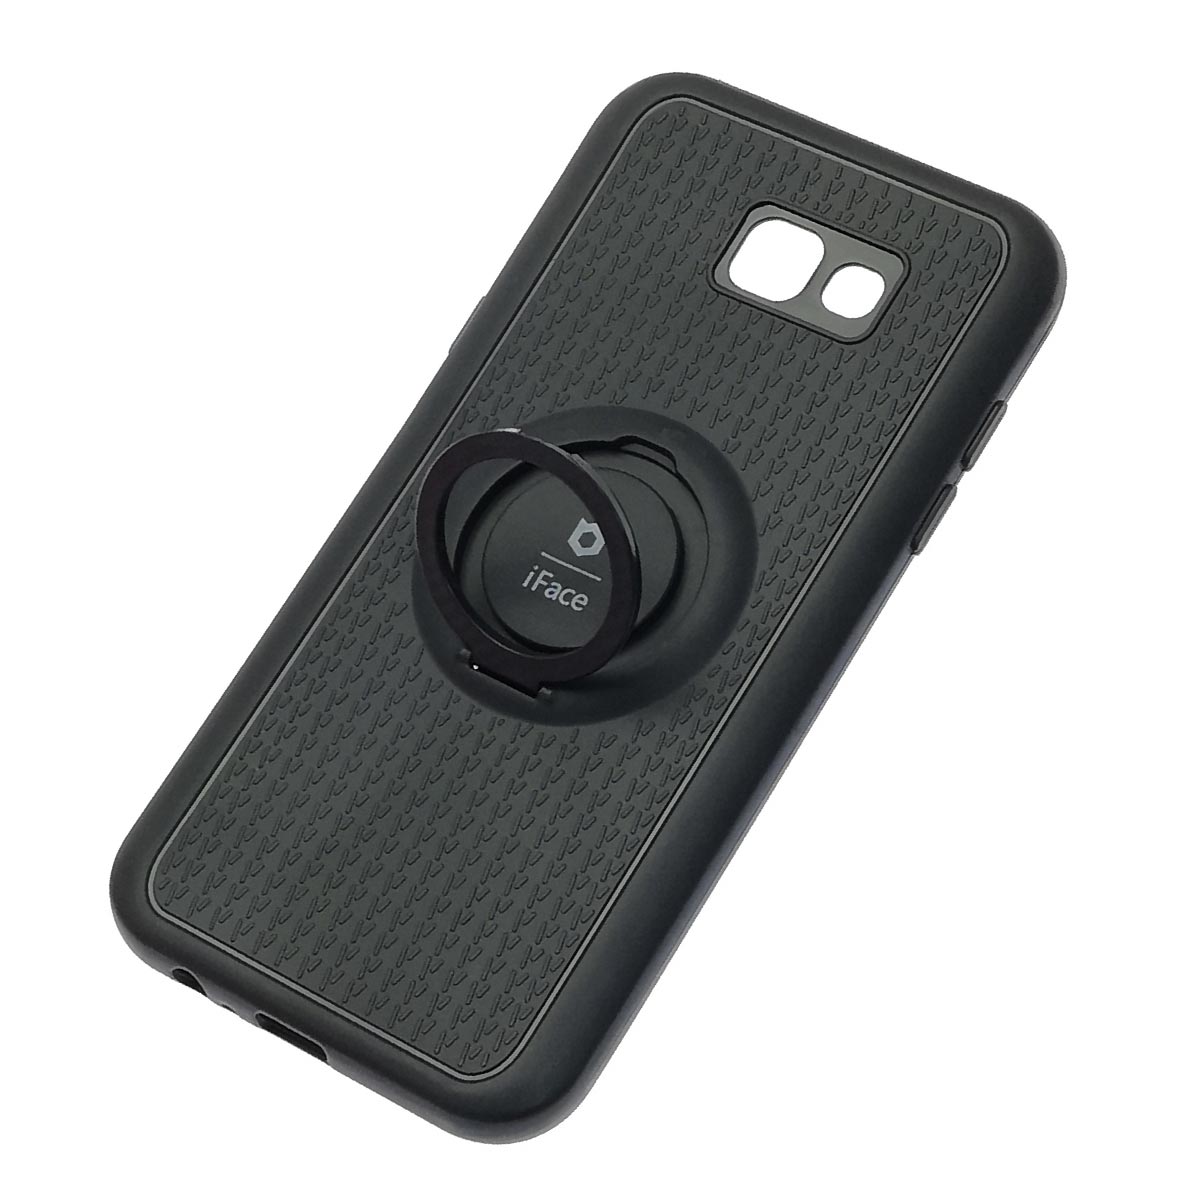 Чехол накладка iFace для SAMSUNG Galaxy A7 2017 (SM-A720), силикон, кольцо держатель, цвет черный.